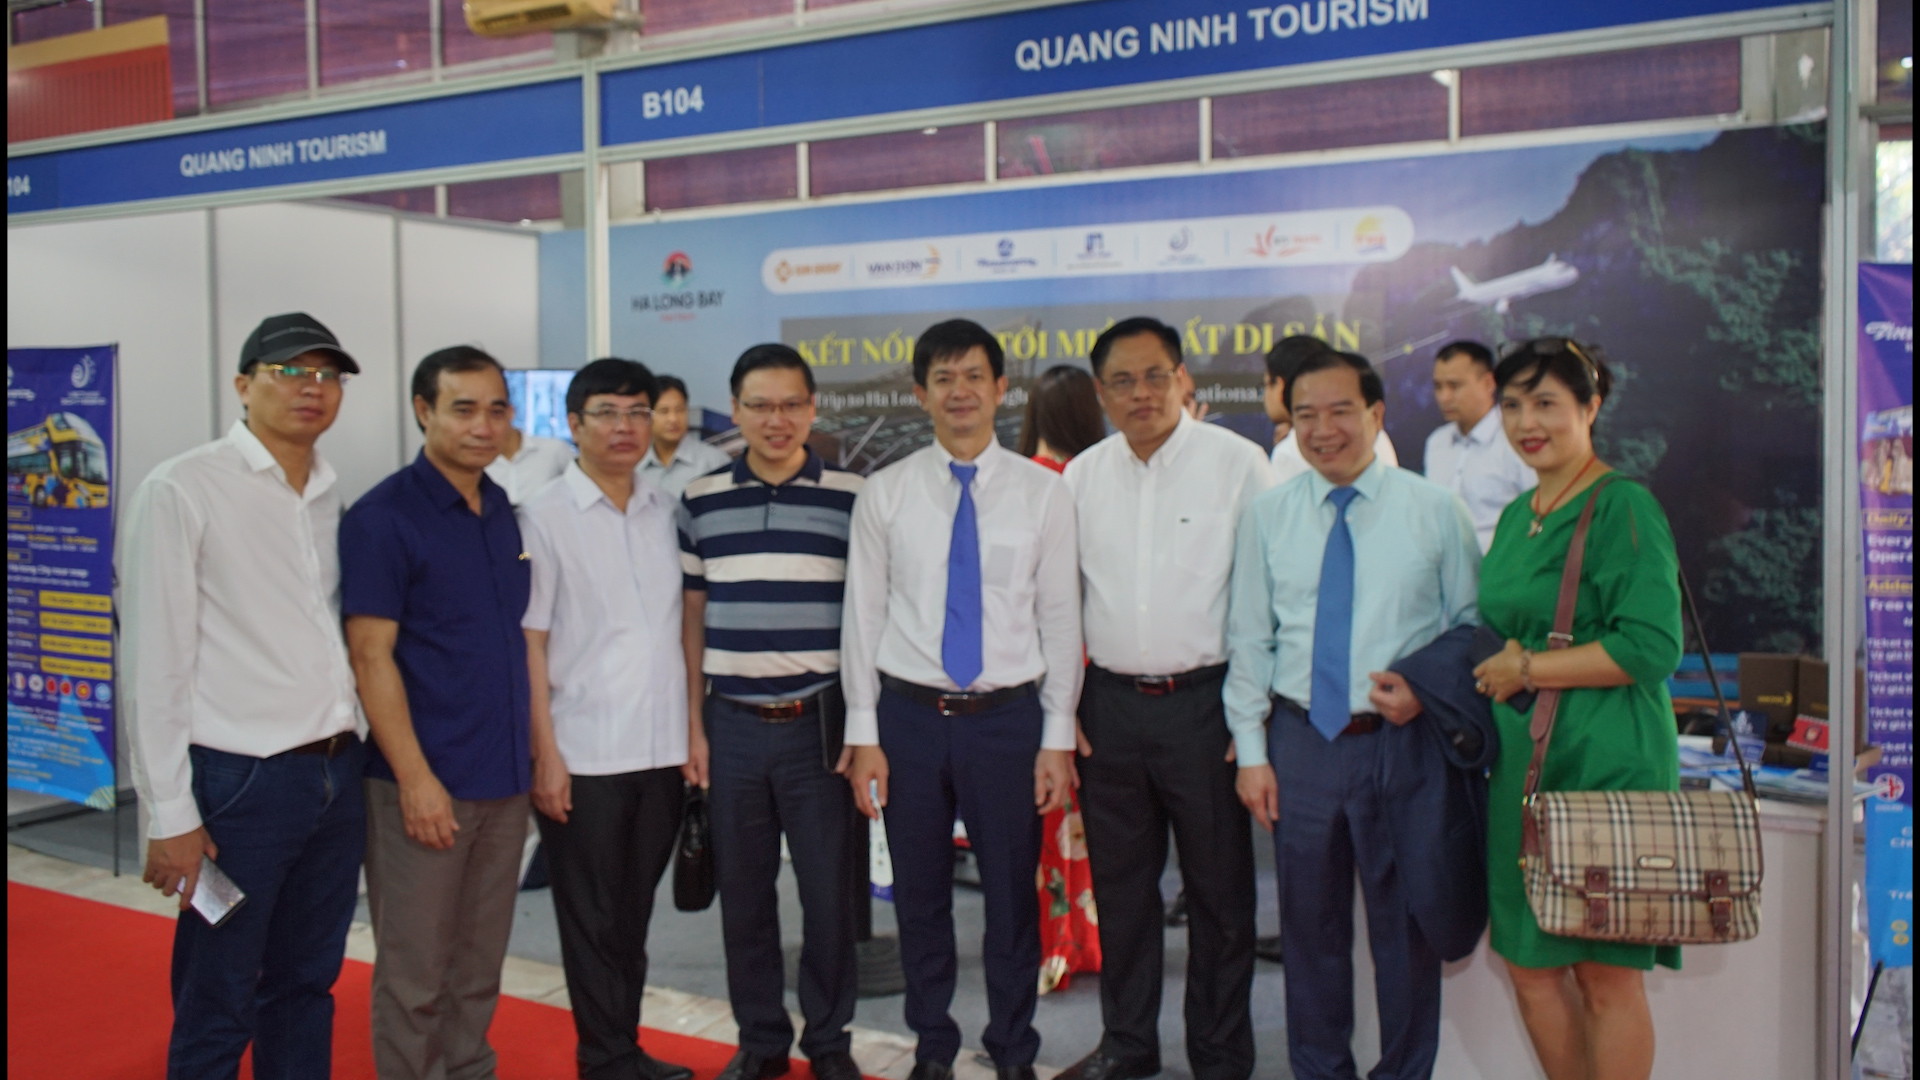 Đồng chí Lê Quang Tùng, Thứ trưởng Bộ Văn hóa, Thể thao và Du lịch tới thăm gian hàng của tỉnh Quảng Ninh